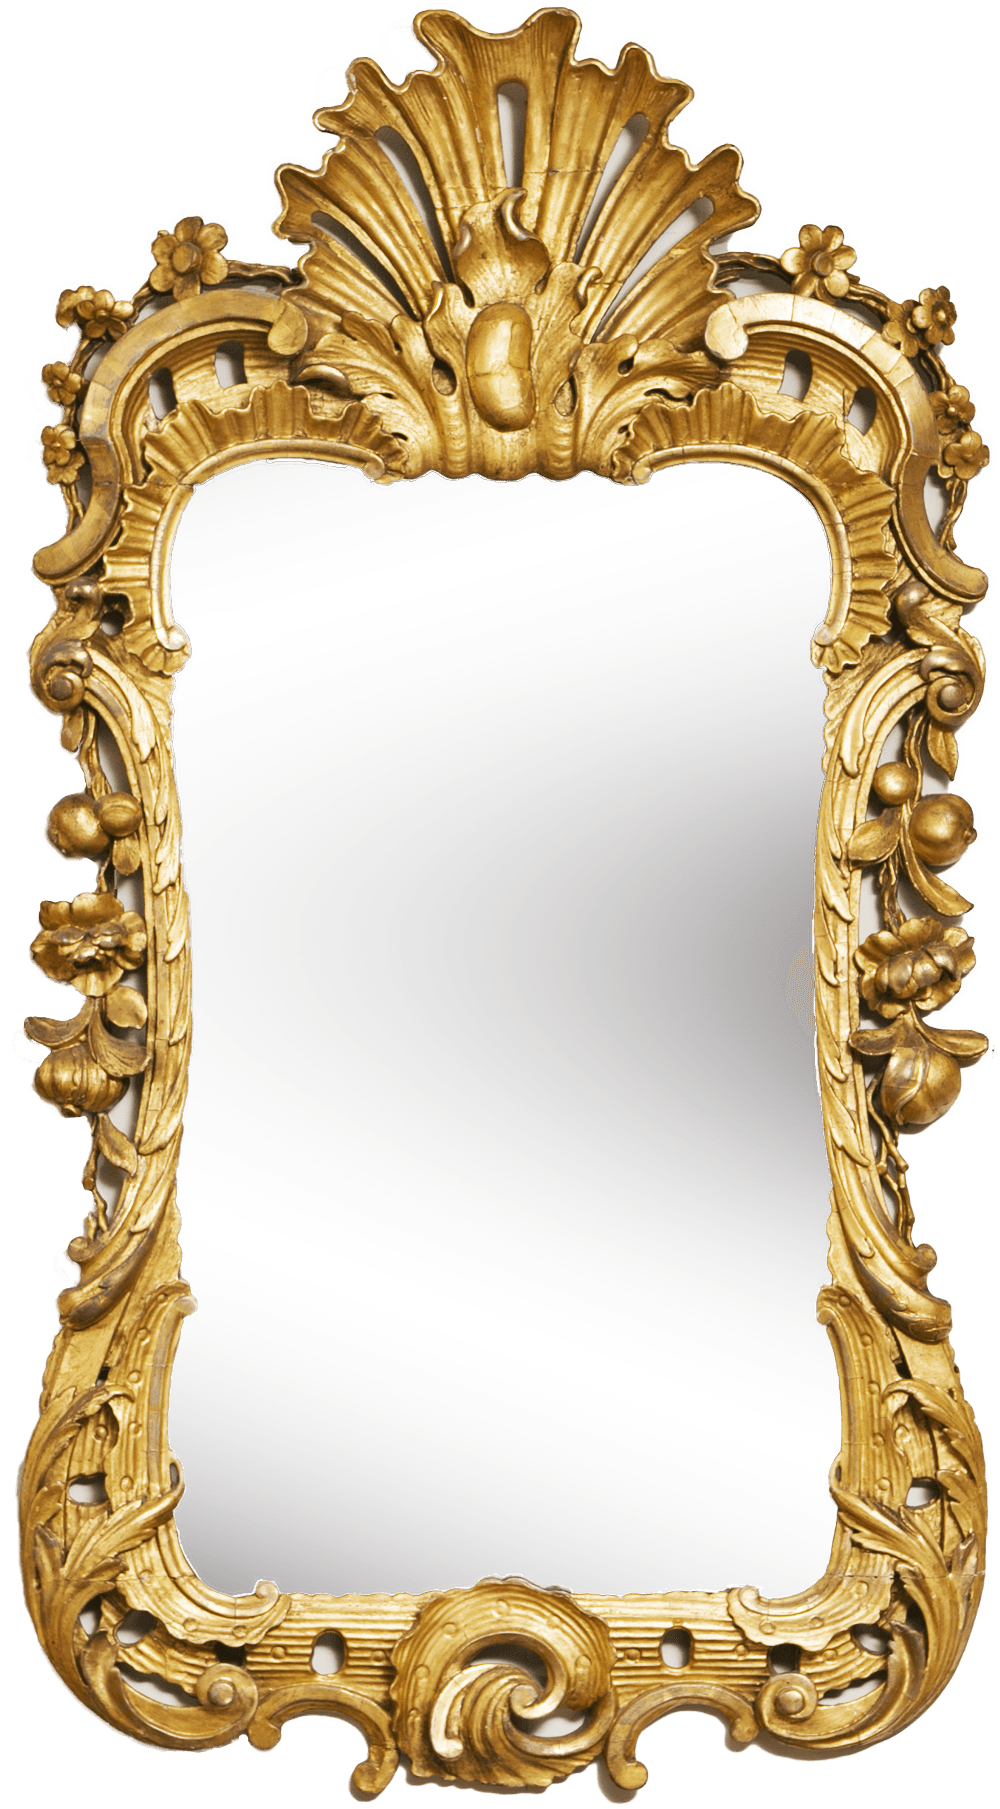 Золотое зеркало рамки PNG высококачественное изображение